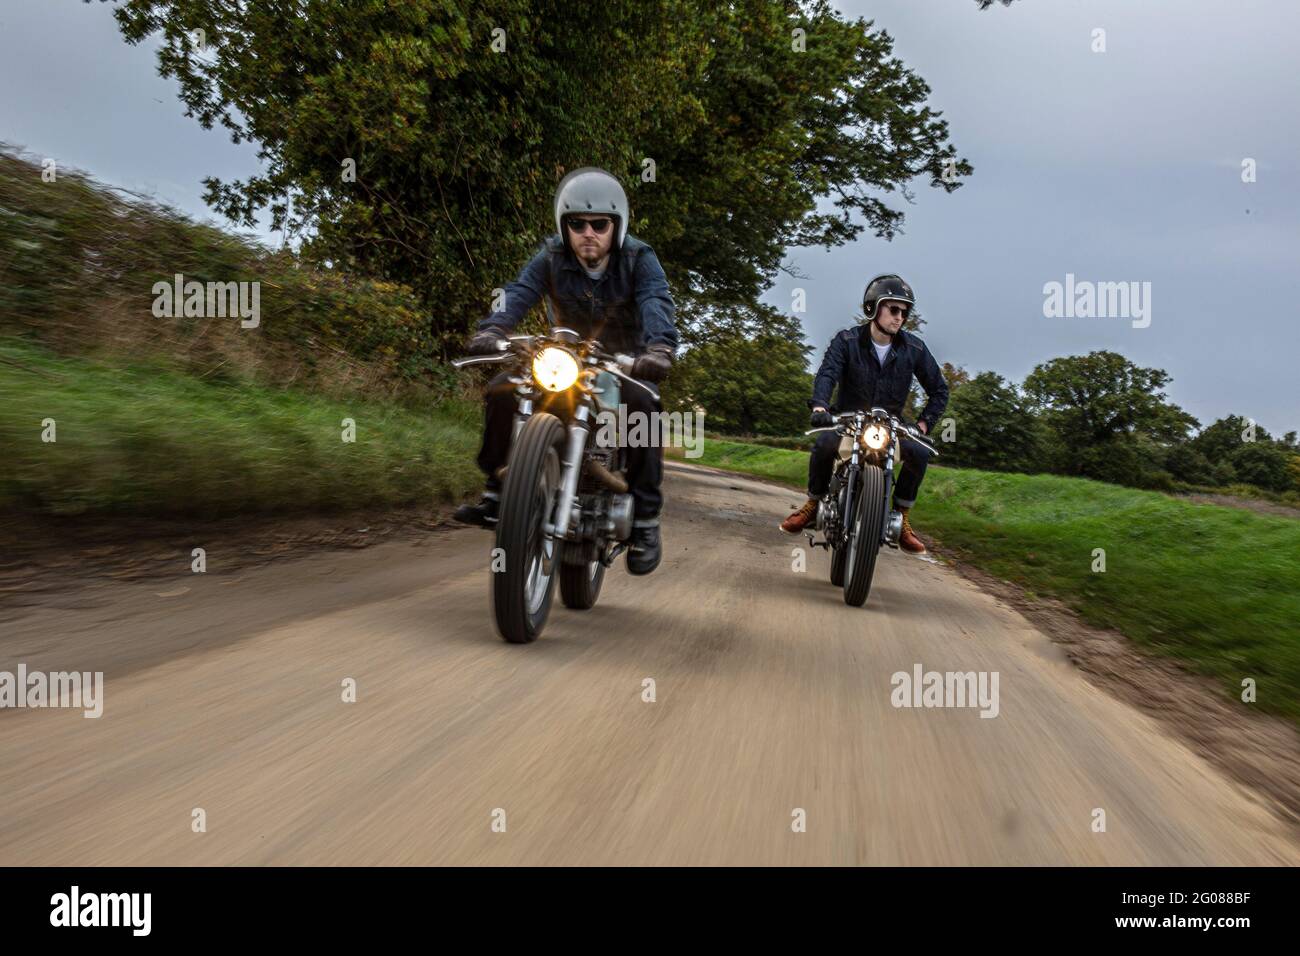 Vorderansicht von zwei Motorrädern und Fahrern auf der Straße.zwei Motorradfahrer auf einer Landstraße. Stockfoto